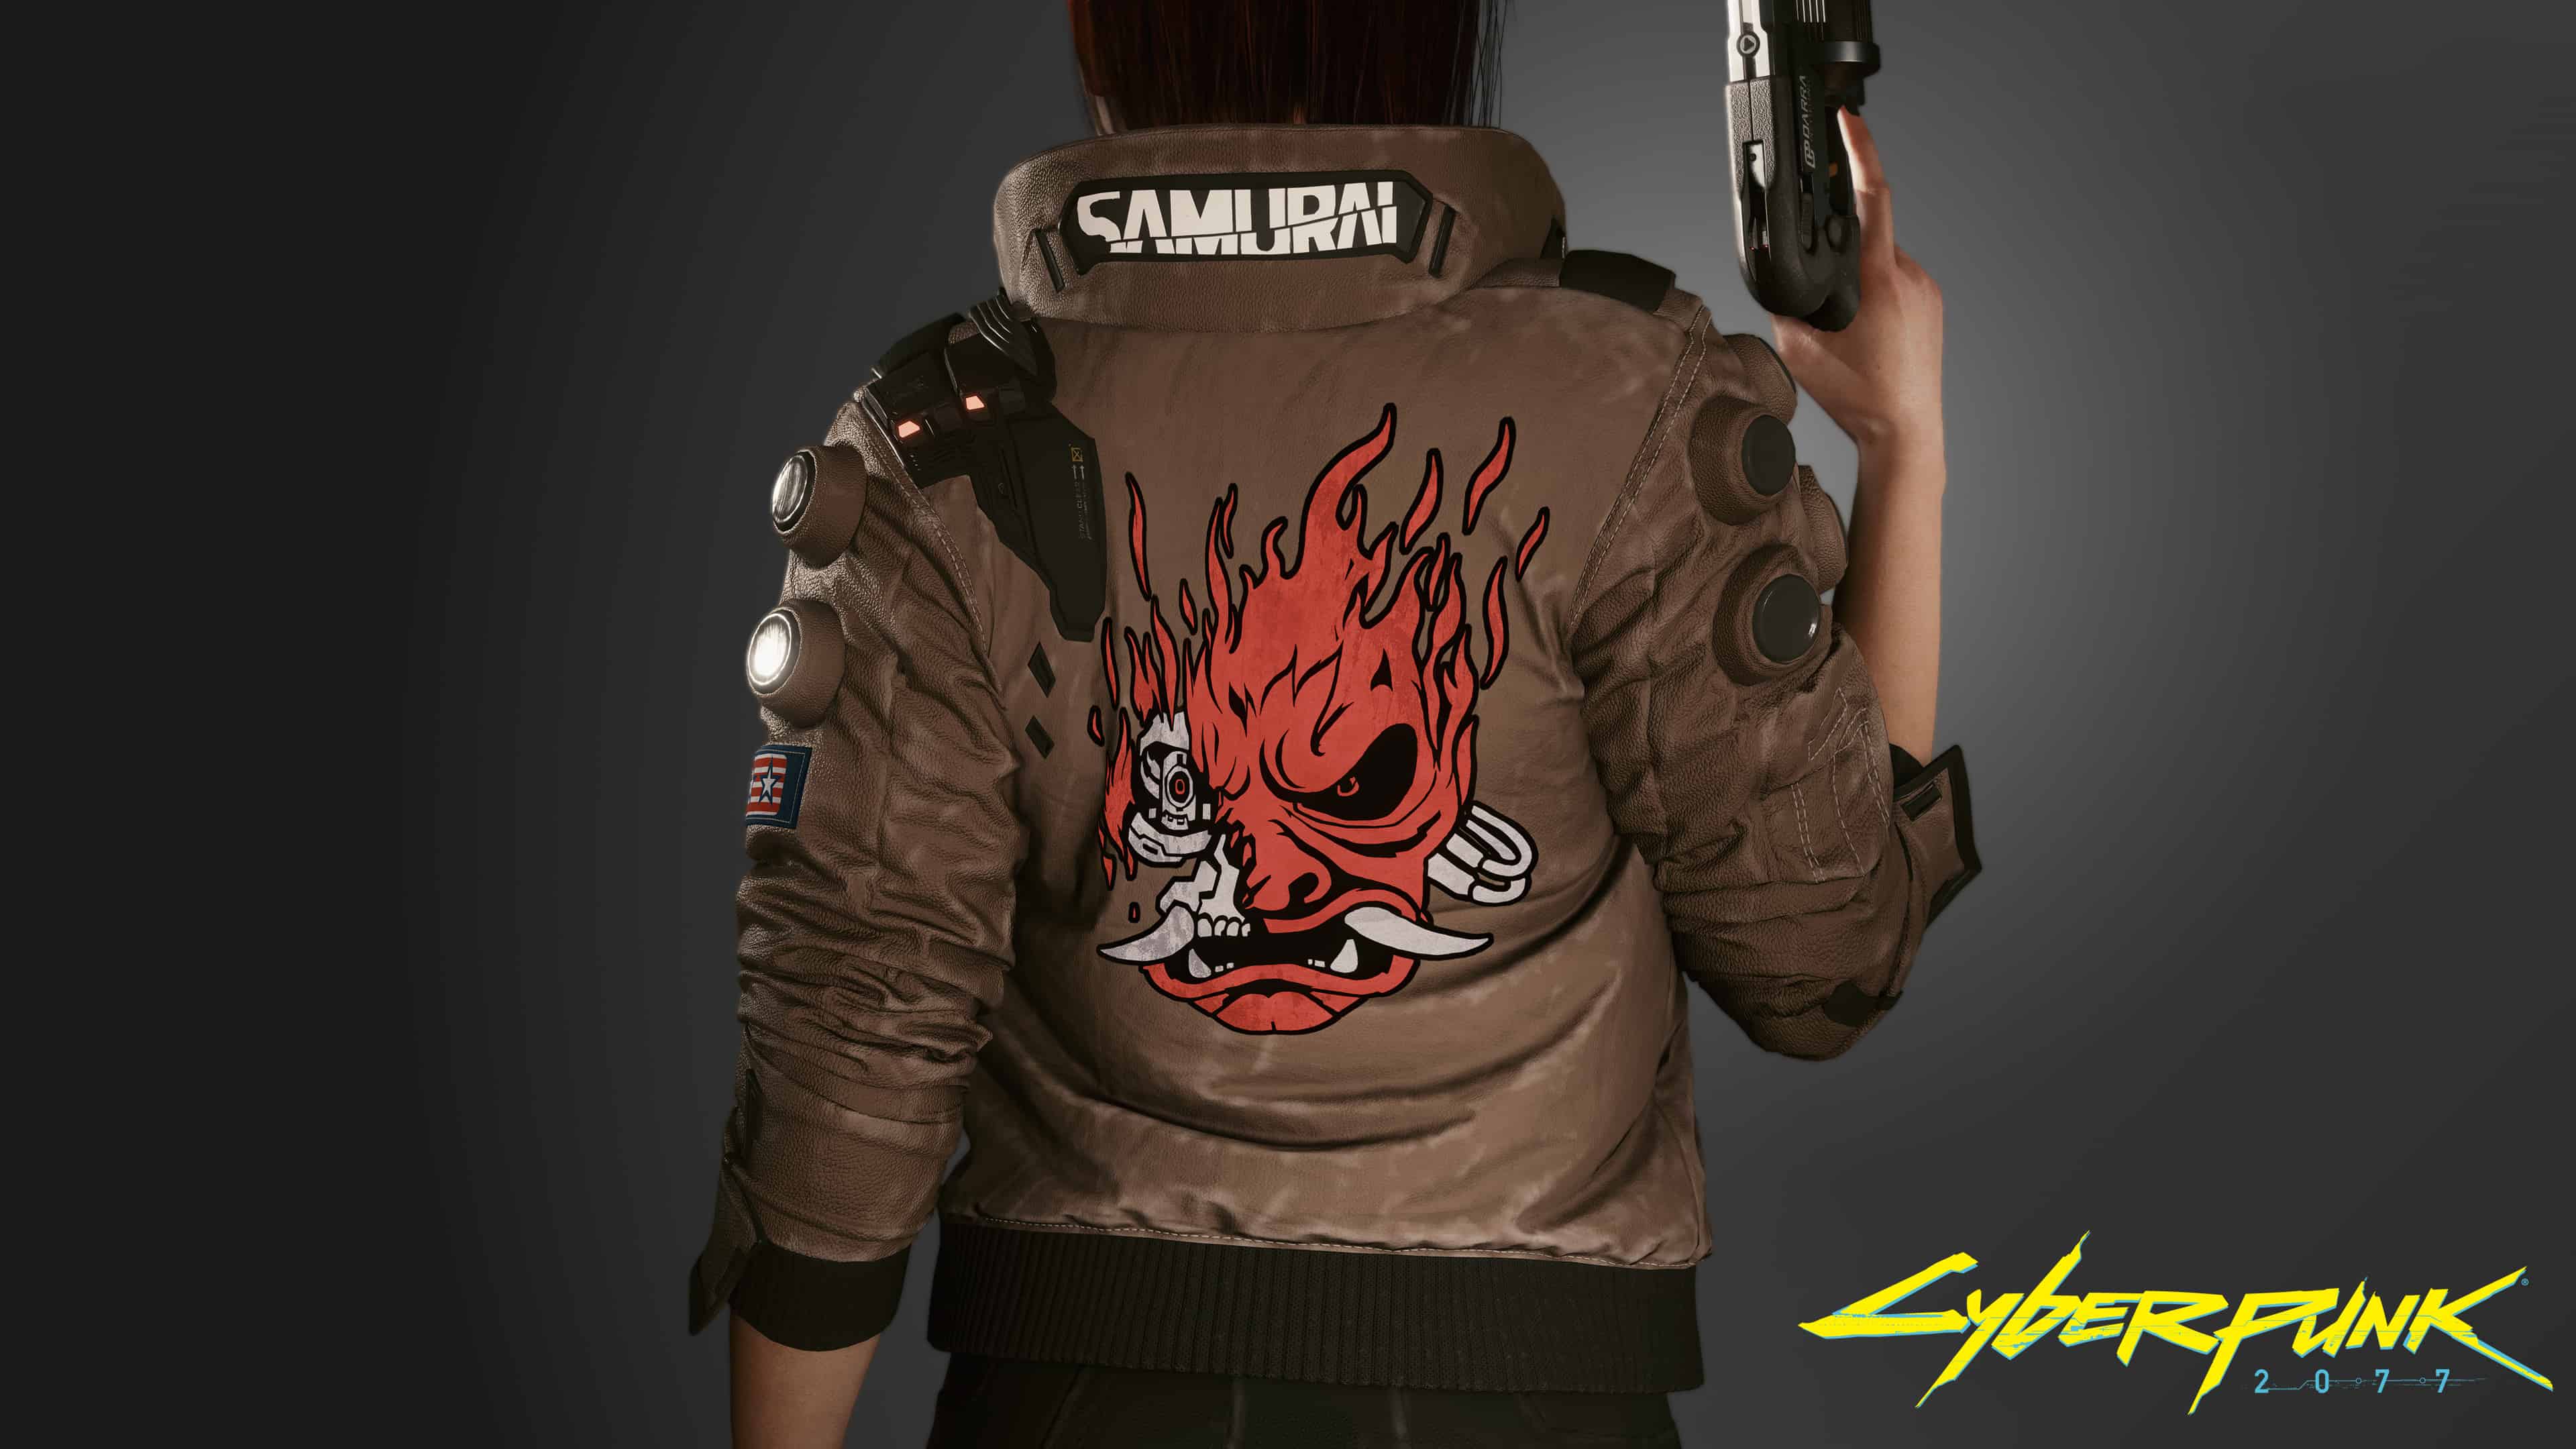 Samurai cyberpunk одежда фото 51